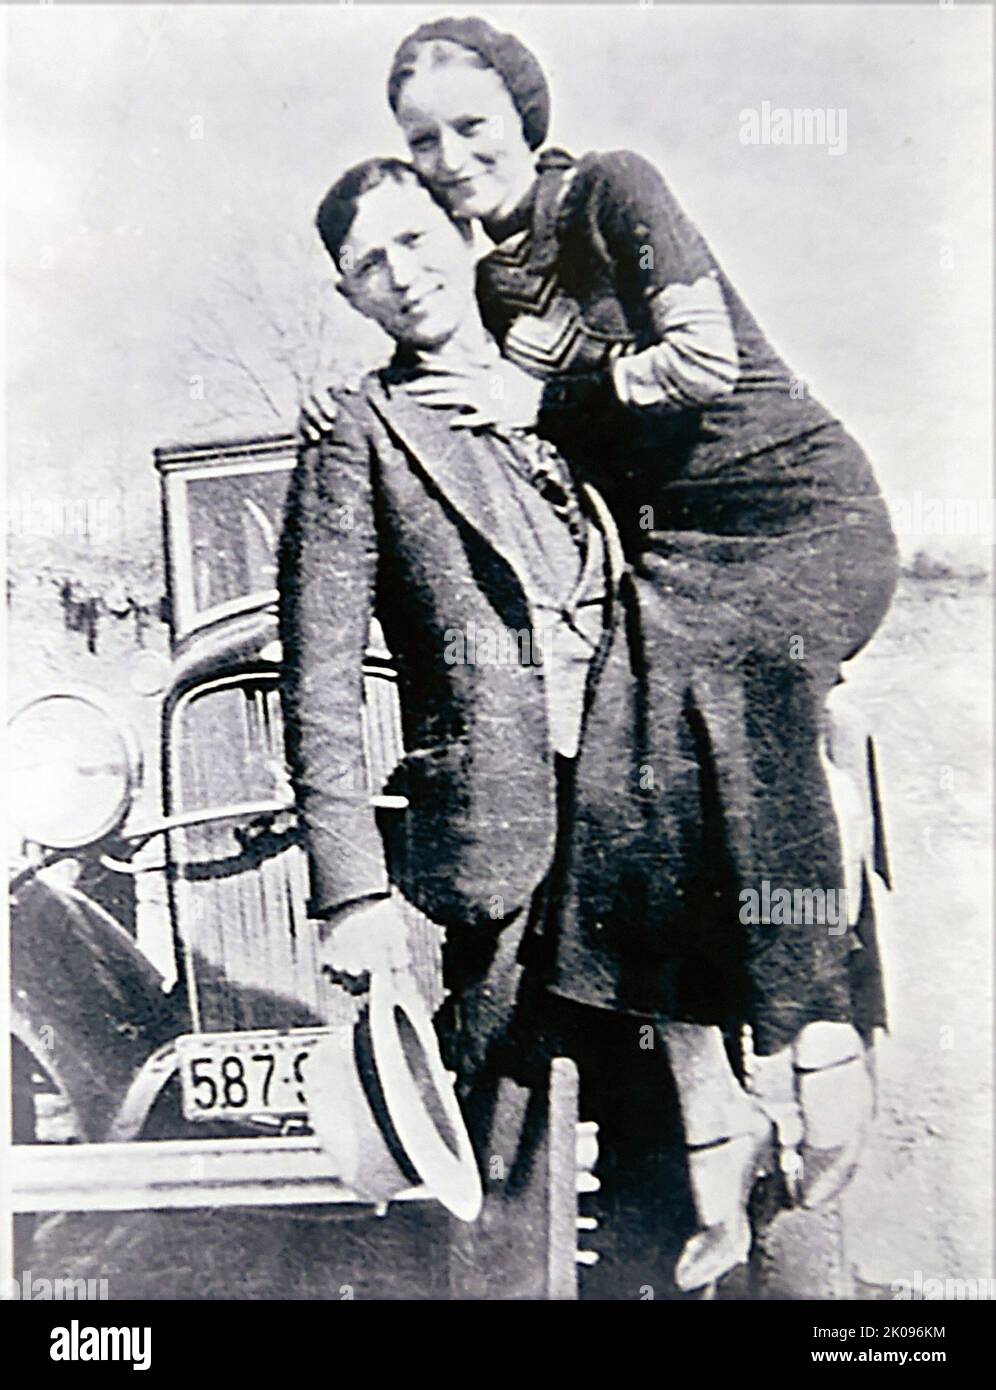 Bonnie und Clyde. Bonnie Elizabeth Parker (1. Oktober 1910 - 23. Mai 1934) und Clyde Chestnut Barrow (24. März 1909 - 23. Mai 1934) waren ein amerikanisches kriminelles Paar, das während der Großen Depression mit ihrer Bande die Vereinigten Staaten bereiste, die für ihre Banküberfälle bekannt war, Obwohl sie es vorzogen, kleine Geschäfte oder ländliche Trauerhäuser auszurauben. Ihre Heldentaten erregten die Aufmerksamkeit der amerikanischen Presse und ihrer Leserschaft während der gelegentlich als „Public Enemy-Ära“ zwischen 1931 und 1934 bezeichneten Zeit. Stockfoto